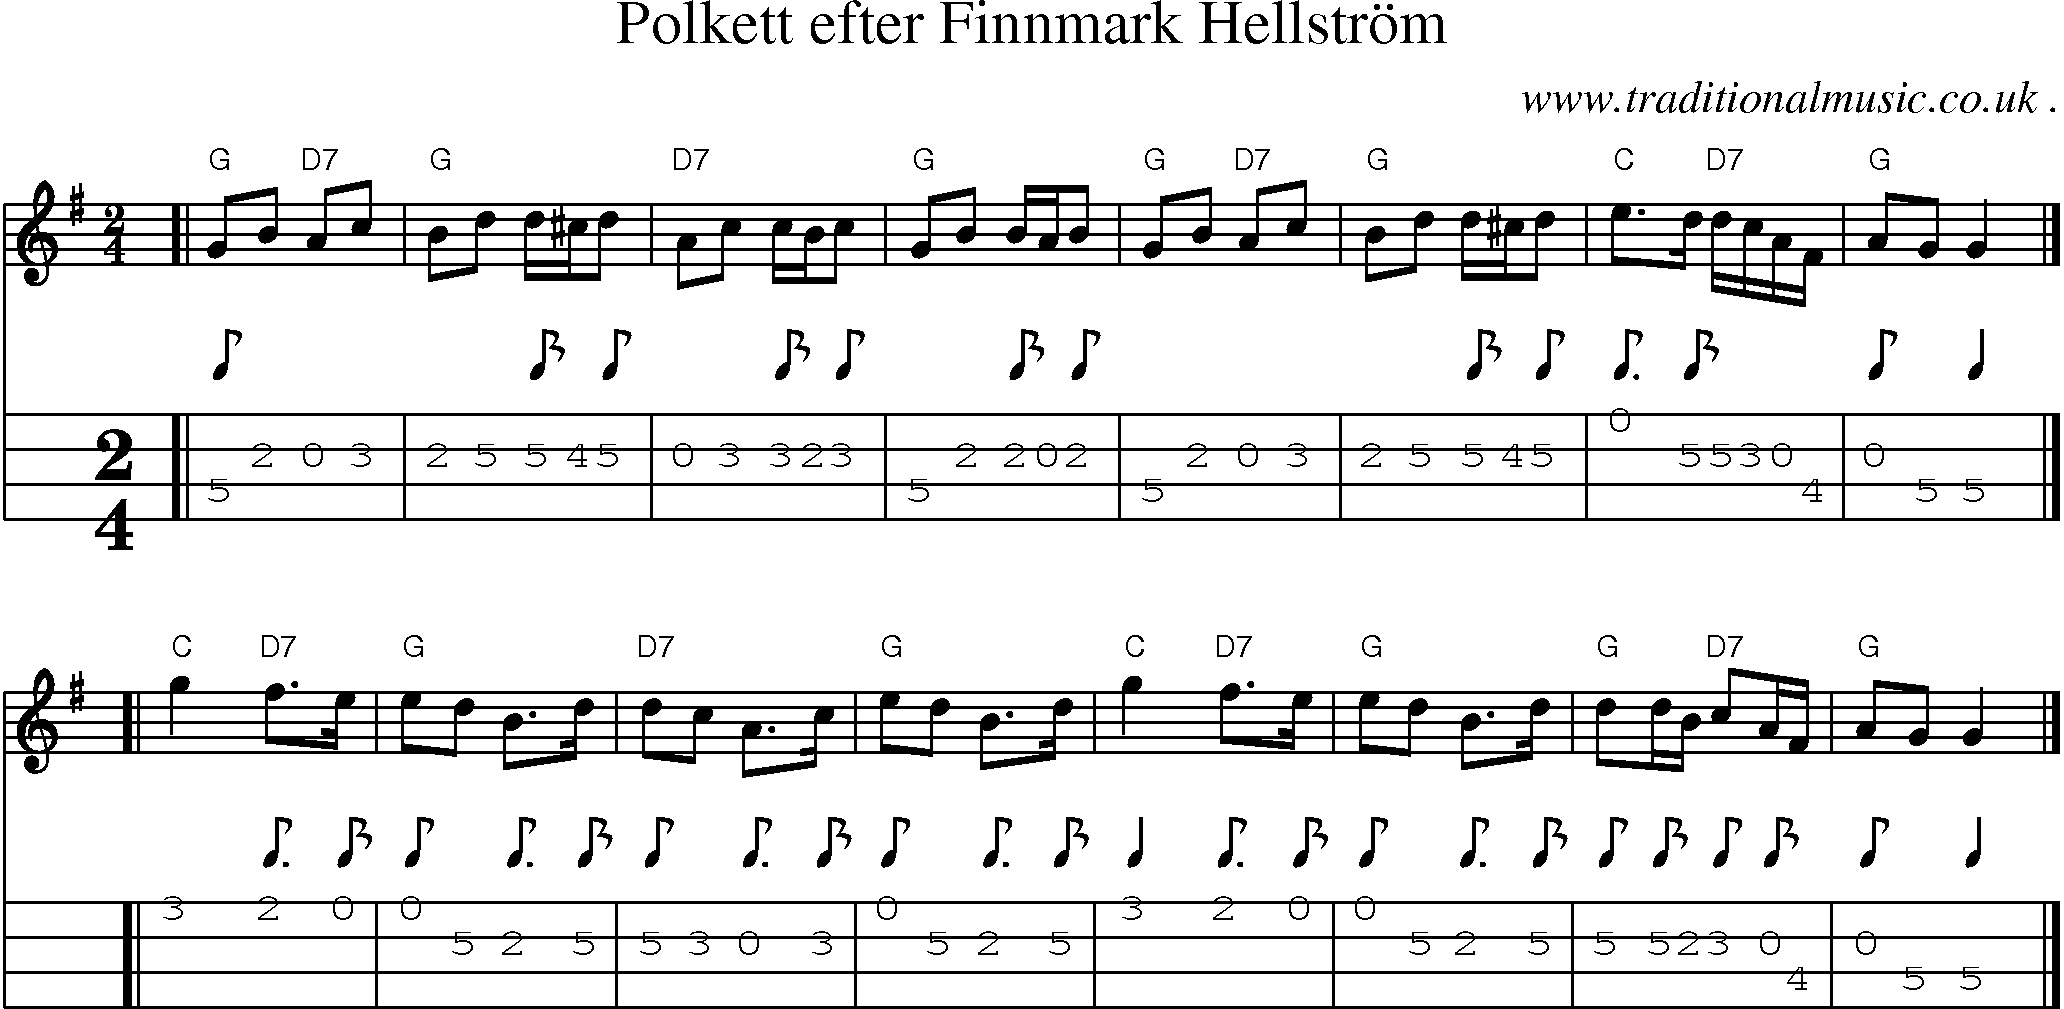 Sheet-music  score, Chords and Mandolin Tabs for Polkett Efter Finnmark Hellstrom